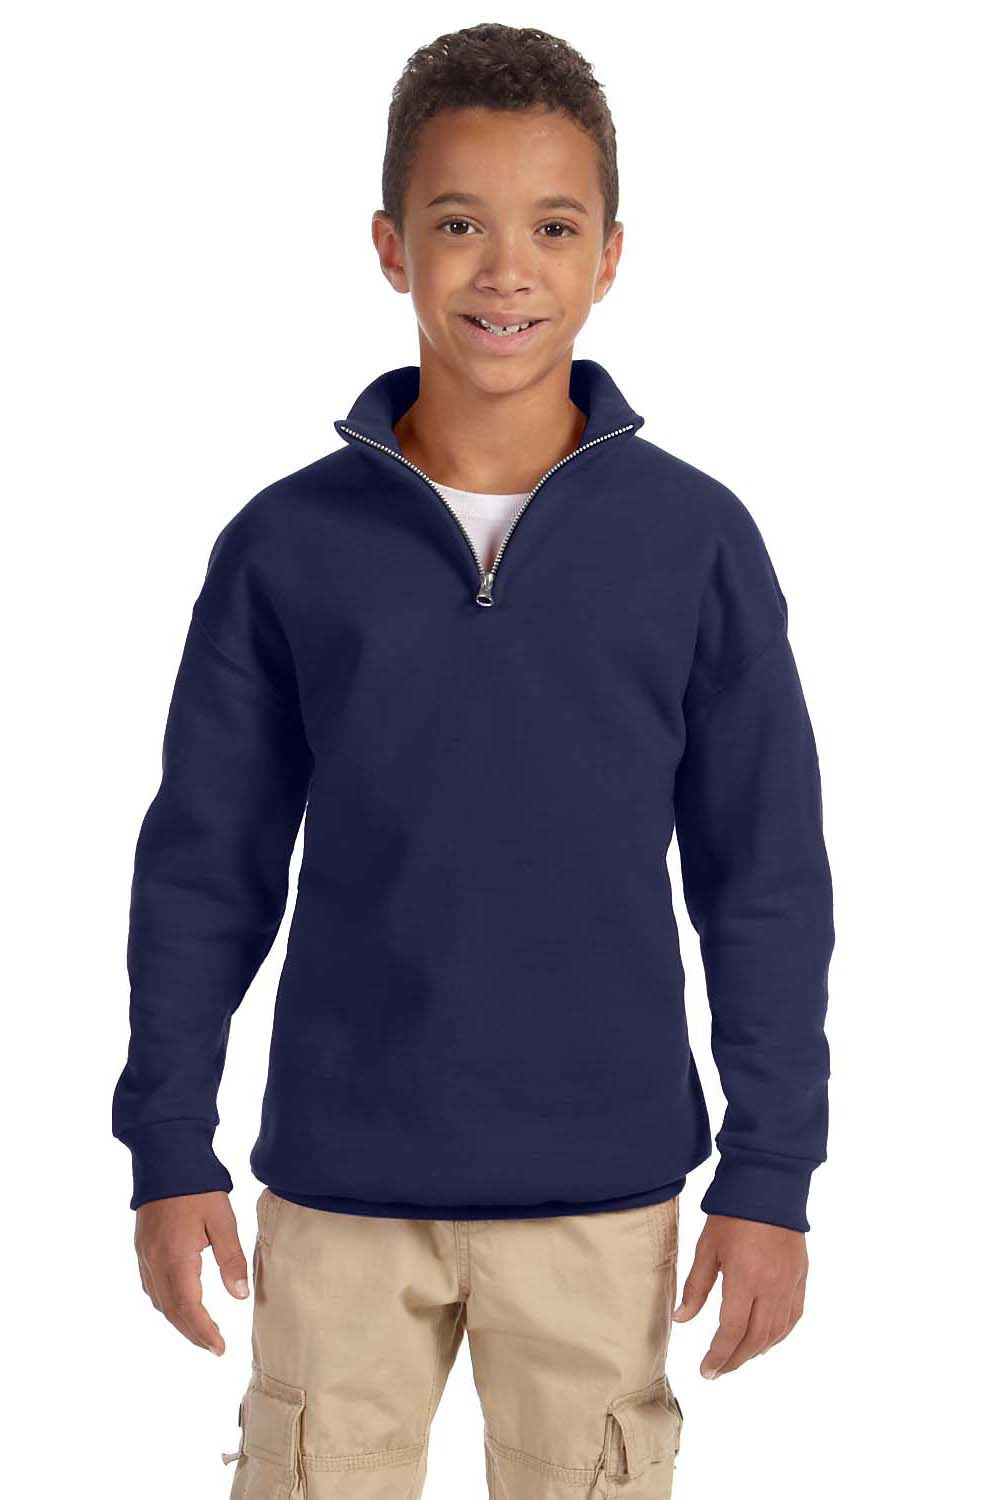 Jerzees 995Y Youth NuBlend Fleece 1/4 Zip Sweatshirt Navy Blue Front